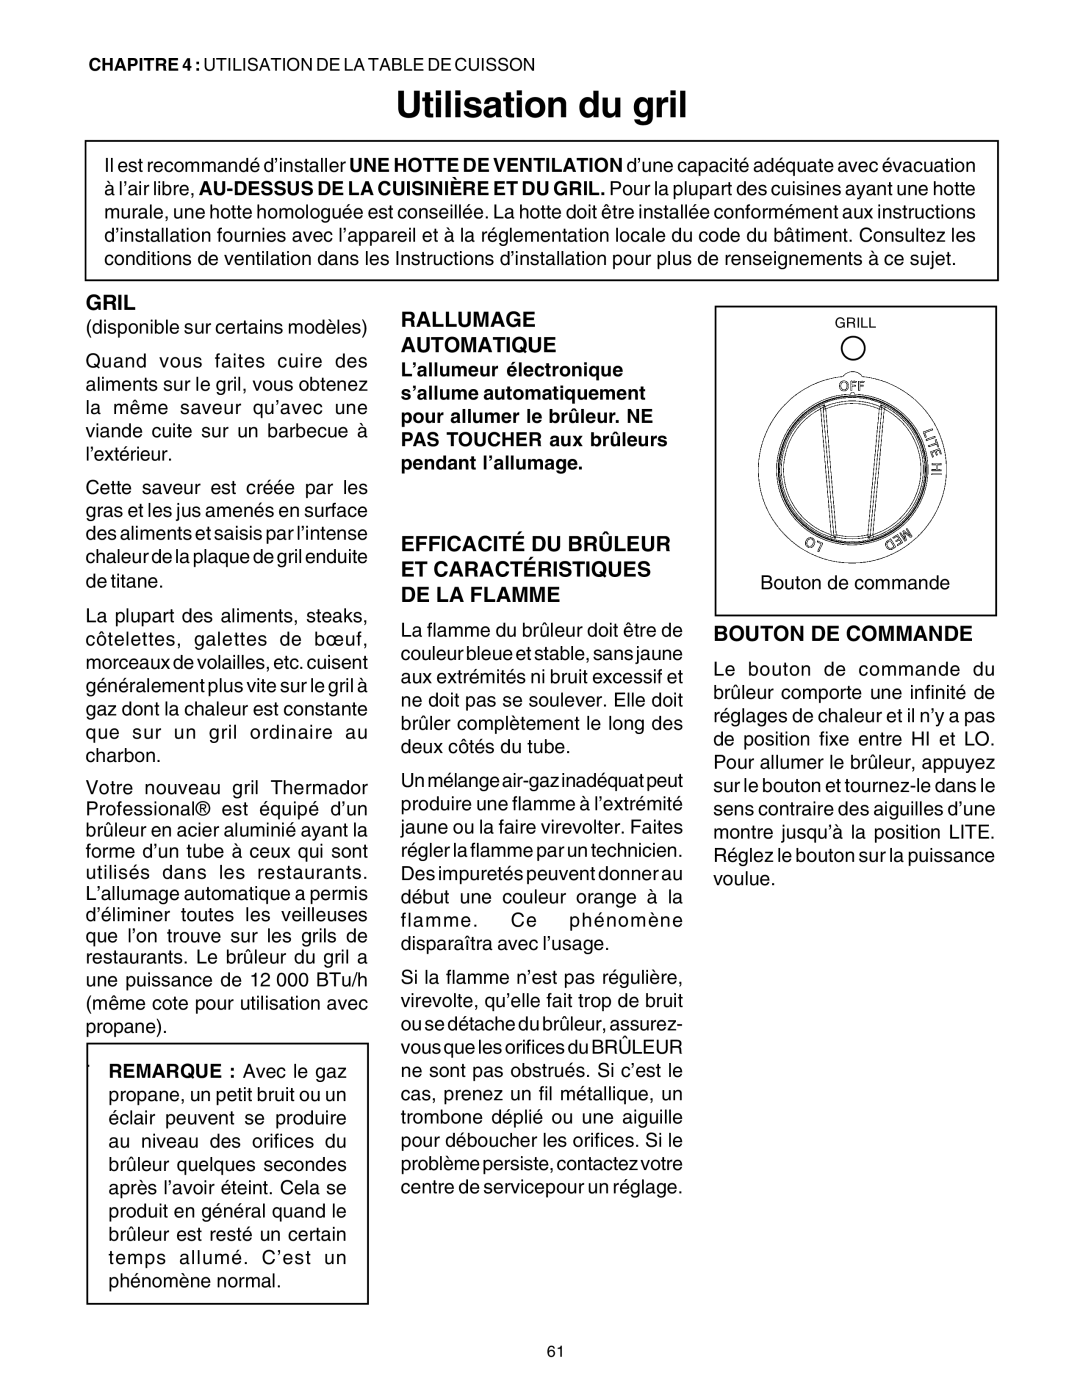 Thermador PG30 manuel dutilisation Utilisation du gril, Gril, Bouton De Commande, Rallumage Automatique 